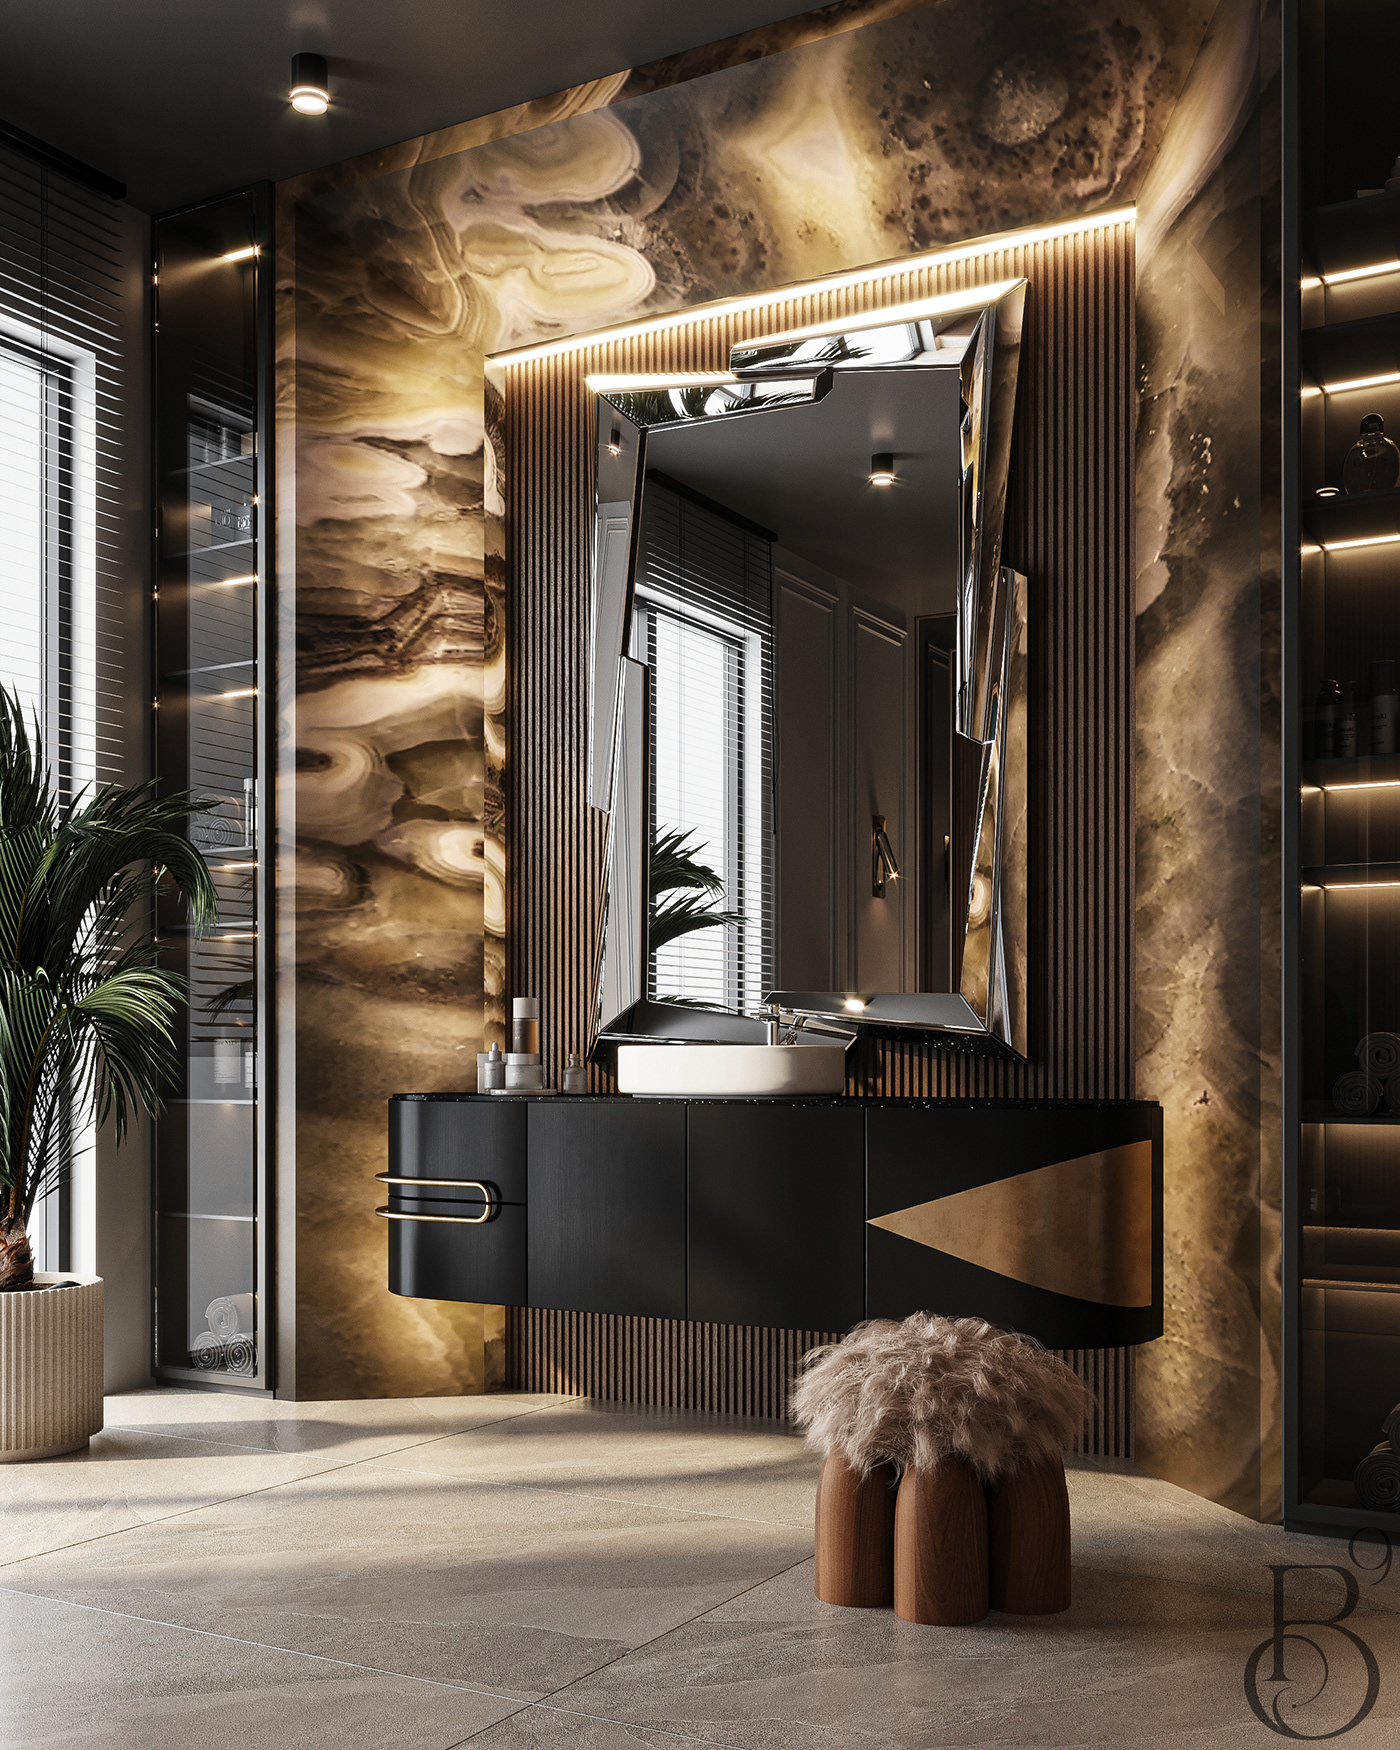 bathroom bathroom design bath Interior design luxury Luxury Design architecture modern Render